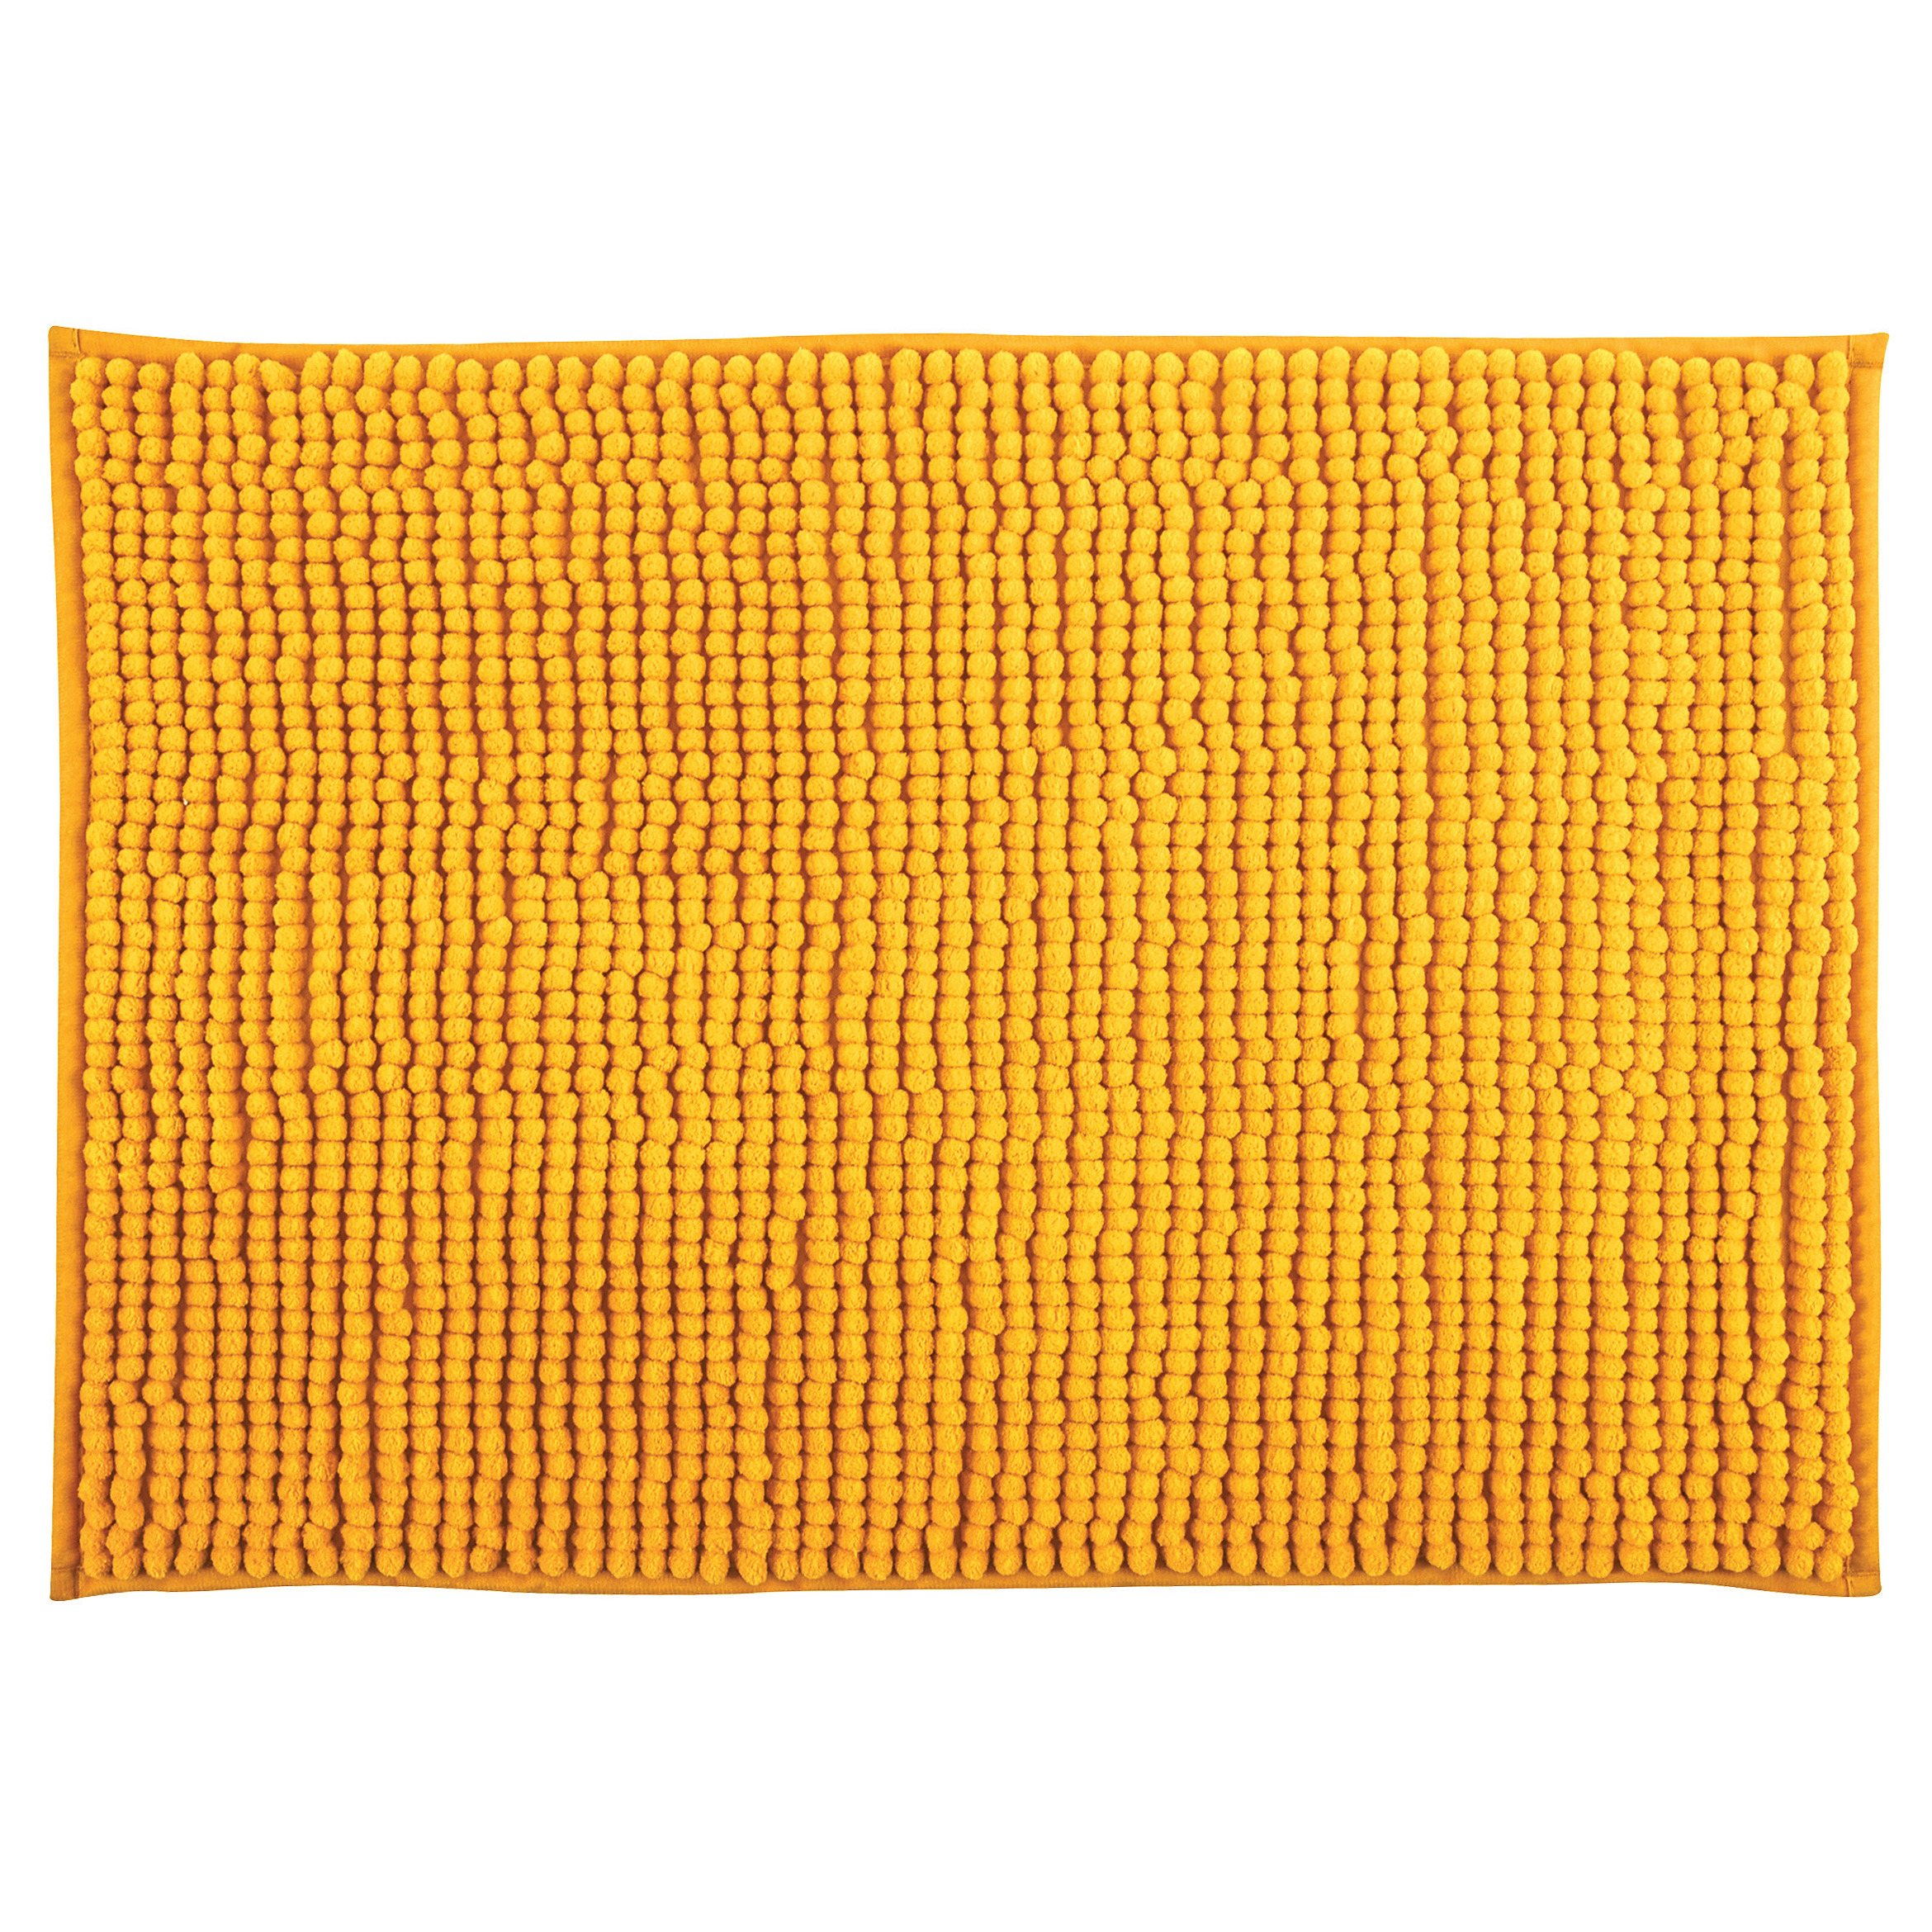 MSV Badkamerkleedje-badmat tapijt voor op de vloer saffraan geel 40 x 60 cm